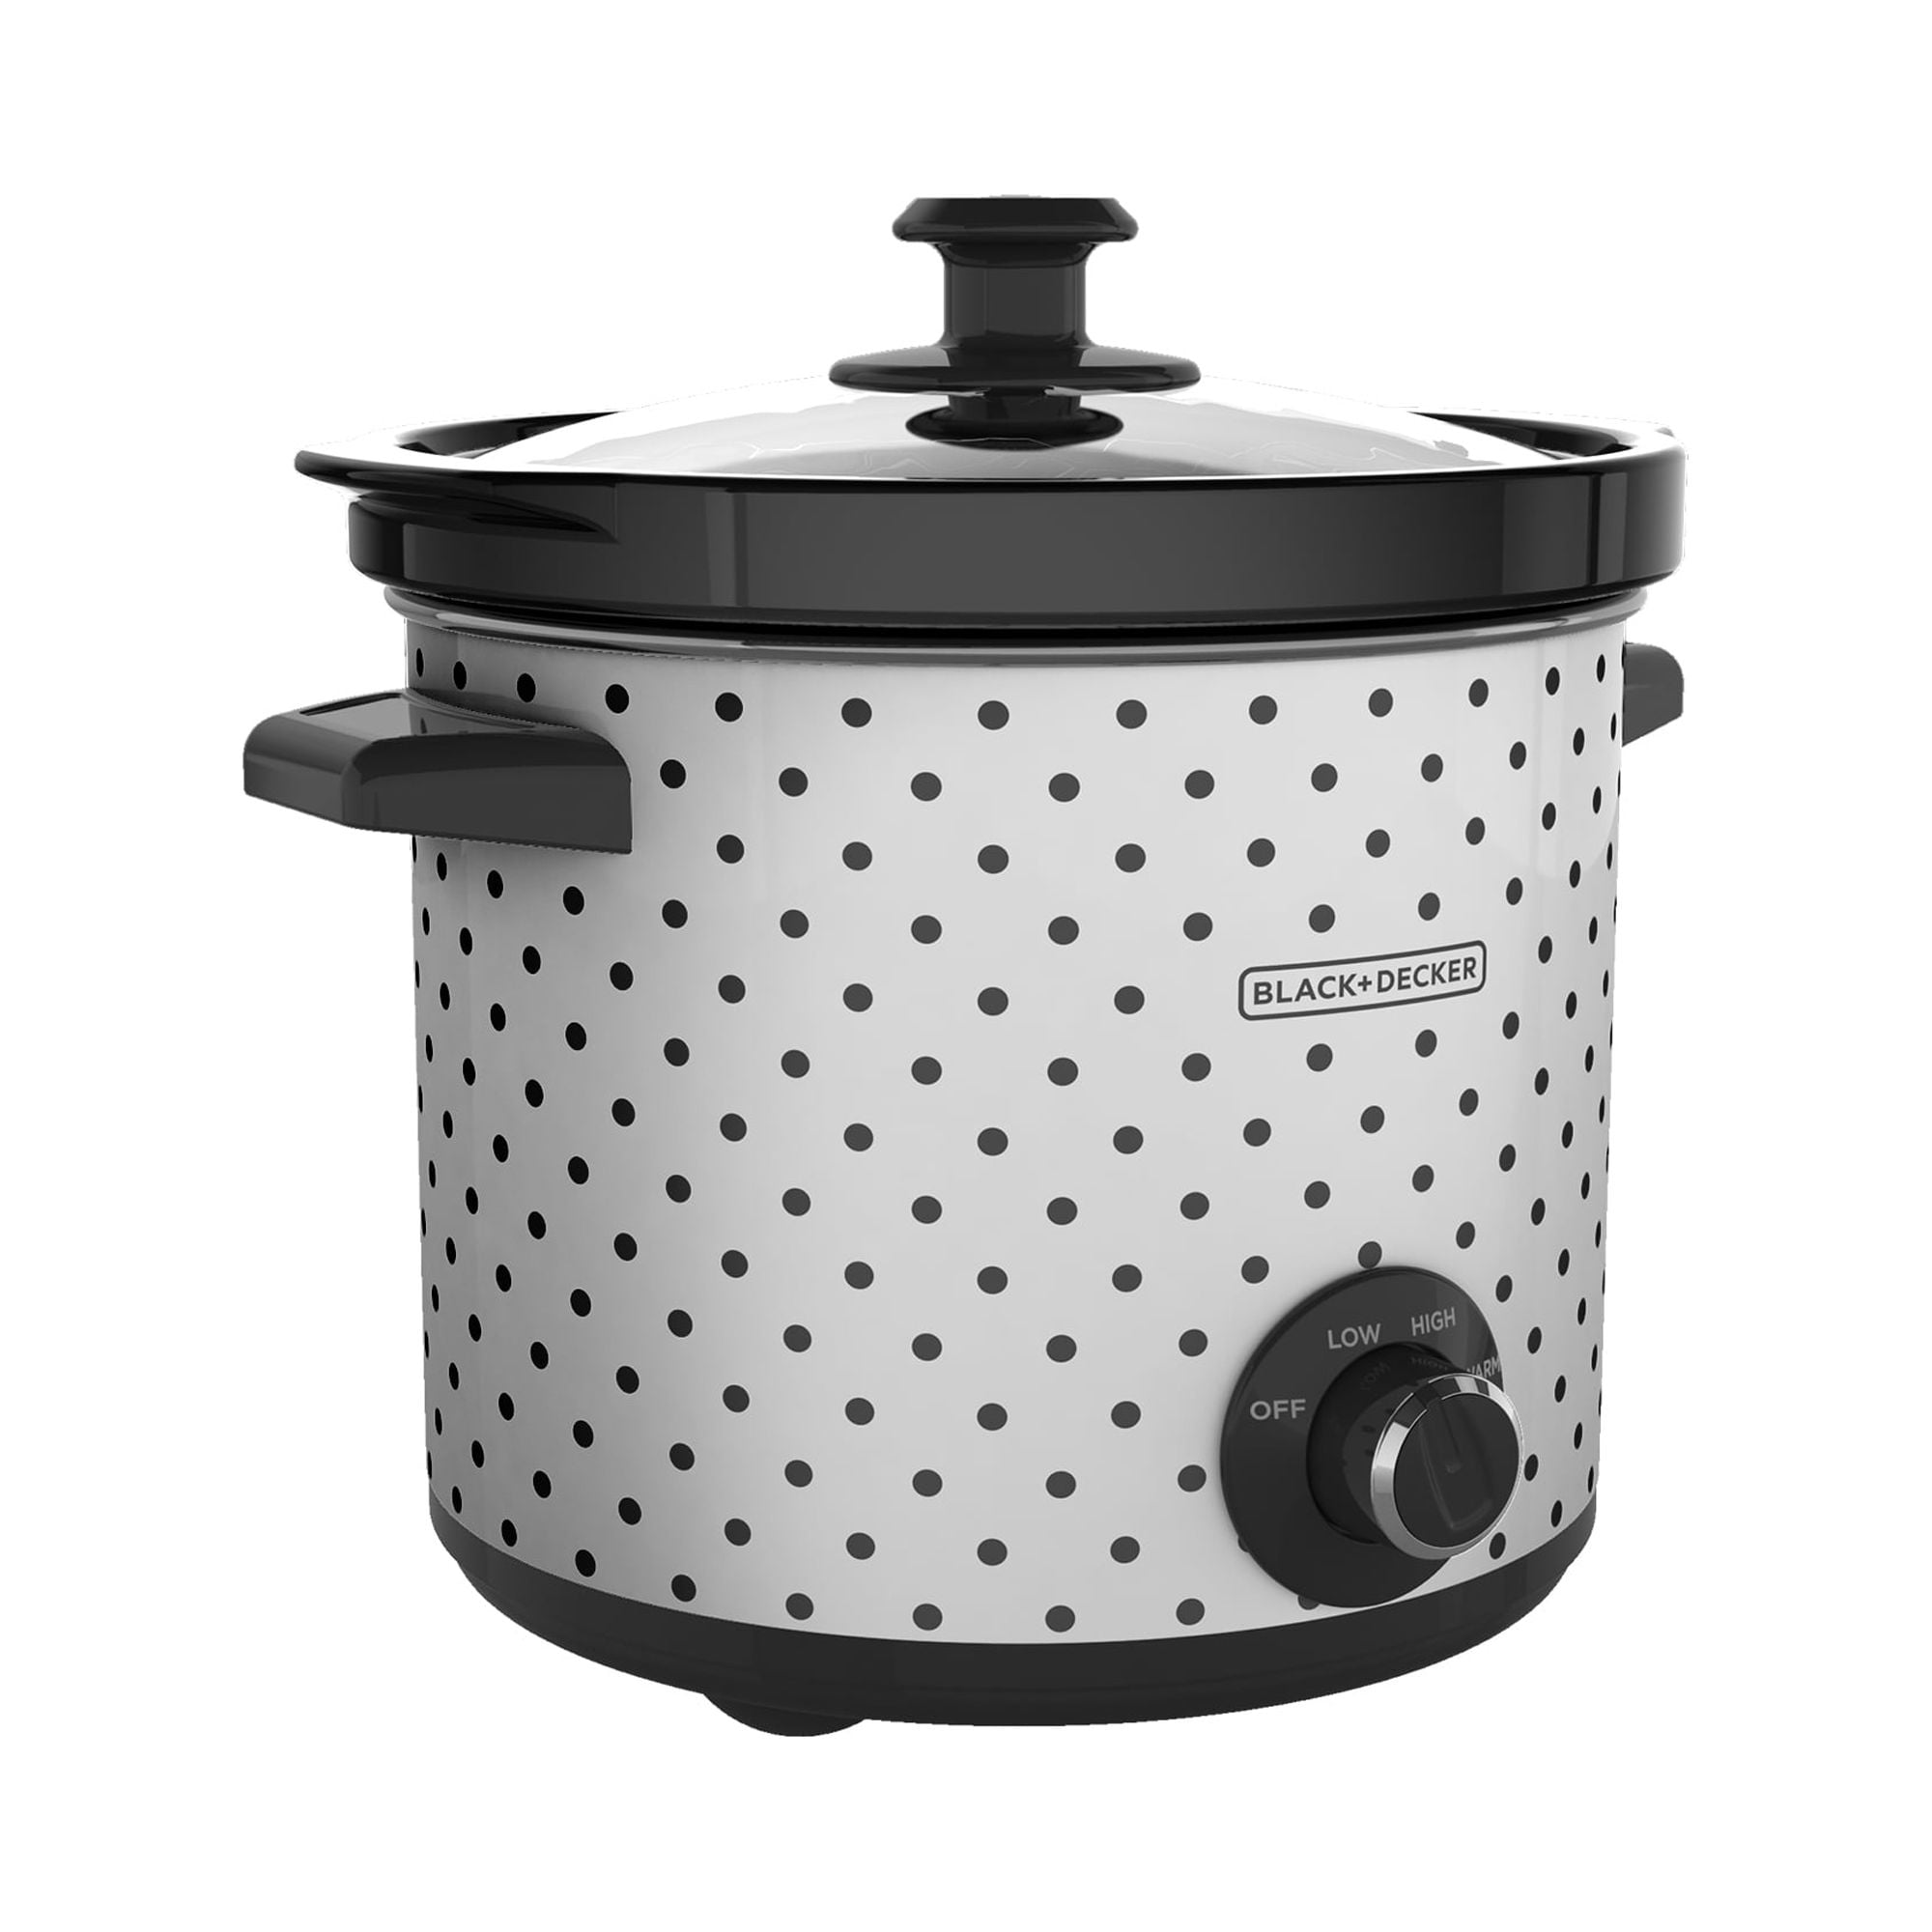 Crockpot 4-Quart Classic Slow Cooker, Temperature Control, Black, by  Technicstreet Store, Nov, 2023